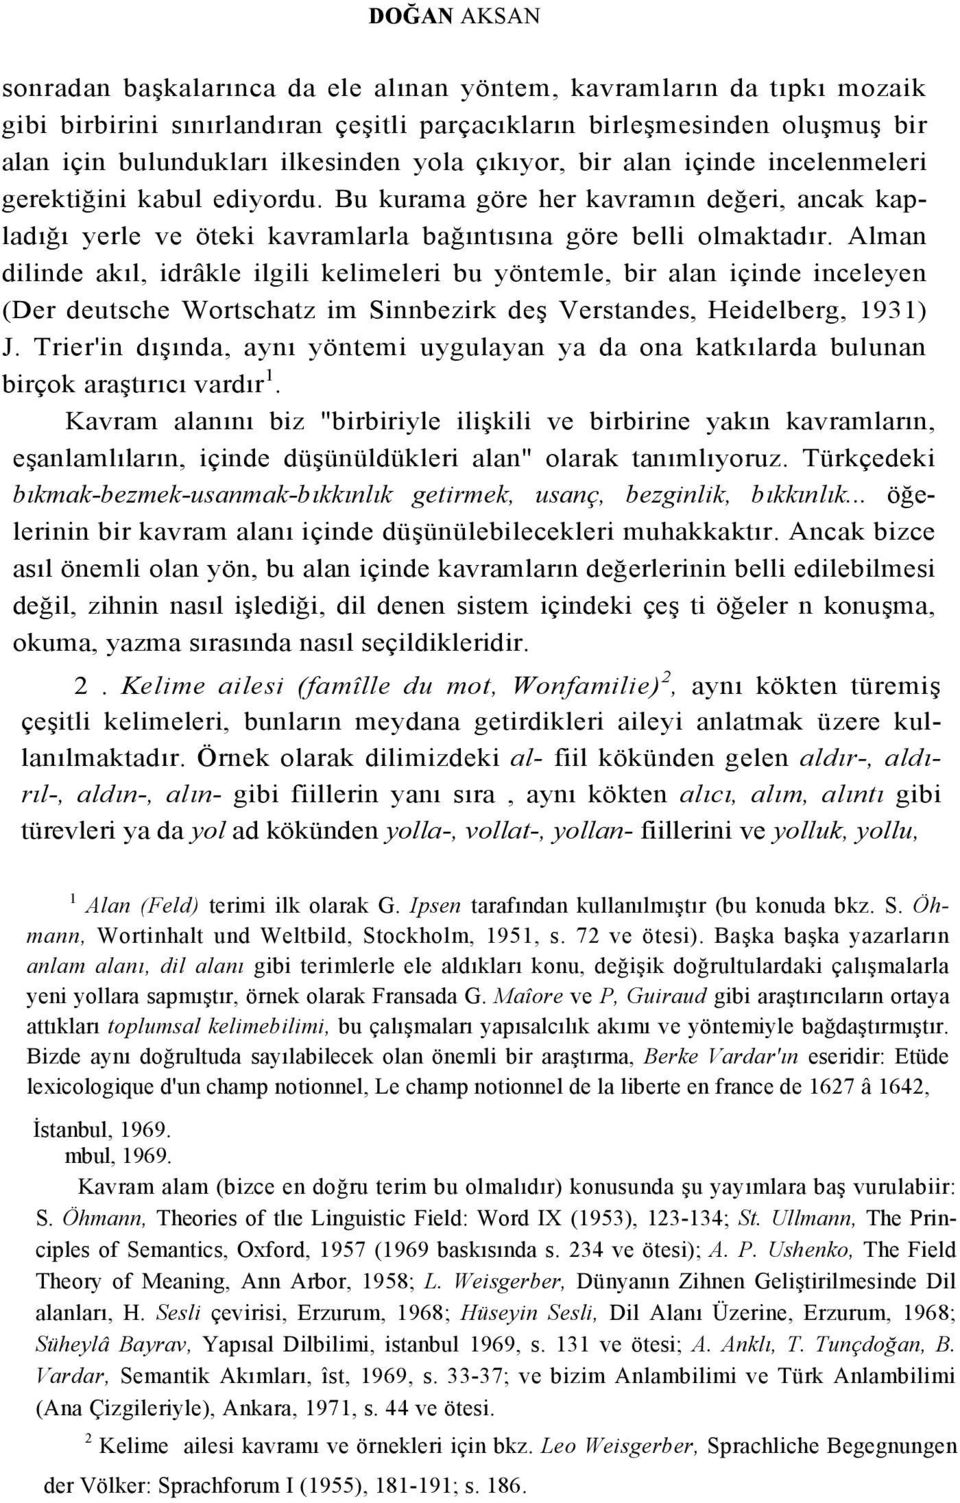 Alman dilinde akıl, idrâkle ilgili kelimeleri bu yöntemle, bir alan içinde inceleyen (Der deutsche Wortschatz im Sinnbezirk deş Verstandes, Heidelberg, 1931) J.